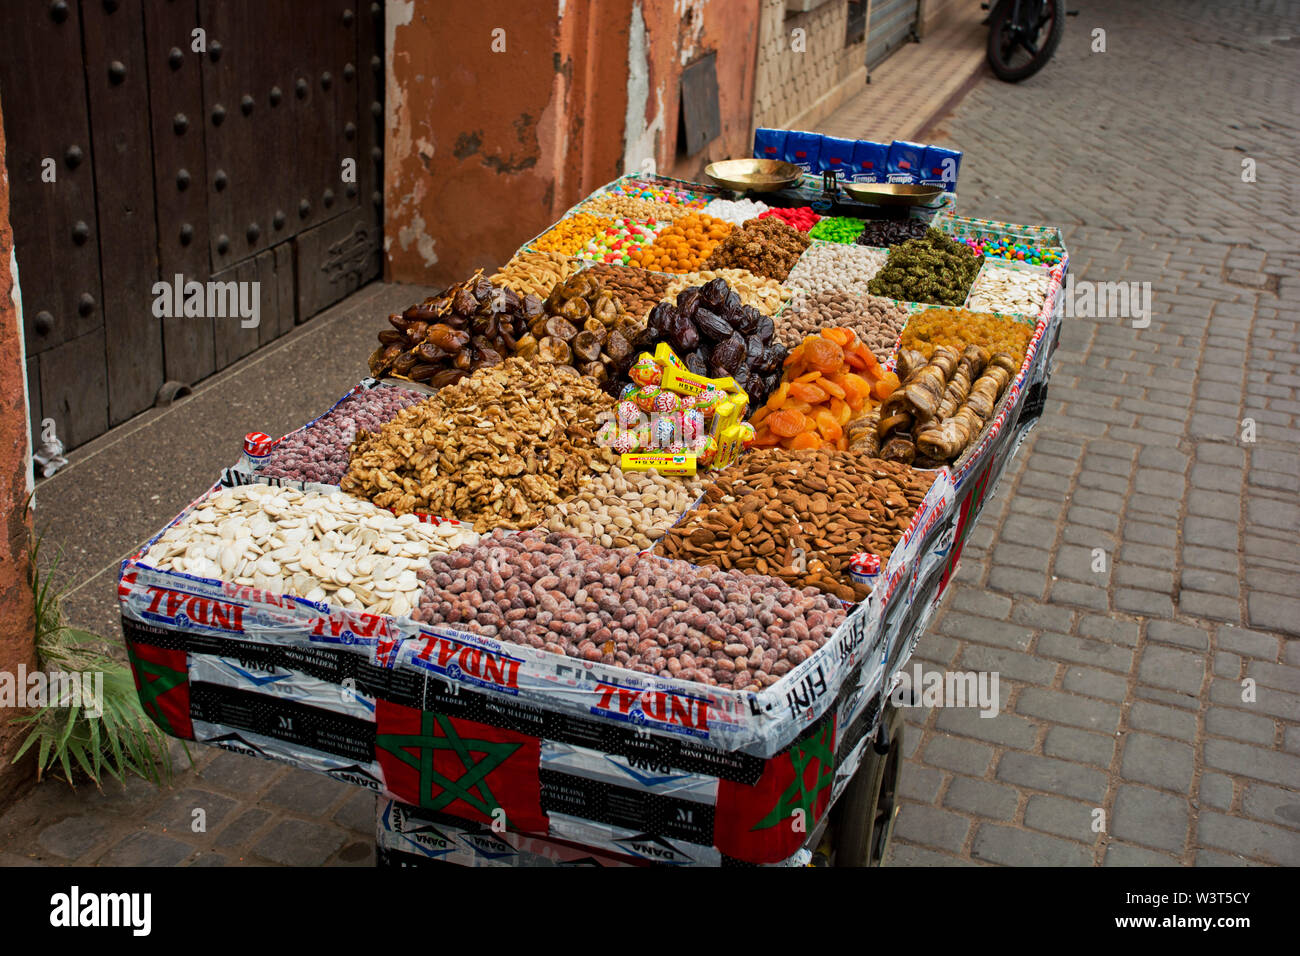 Lokale marokkanischen Stände, Muttern, Süsswaren in den Straßen, Gassen von Marrakesch über tägliche arabische leben im kulturellen Medina Stockfoto